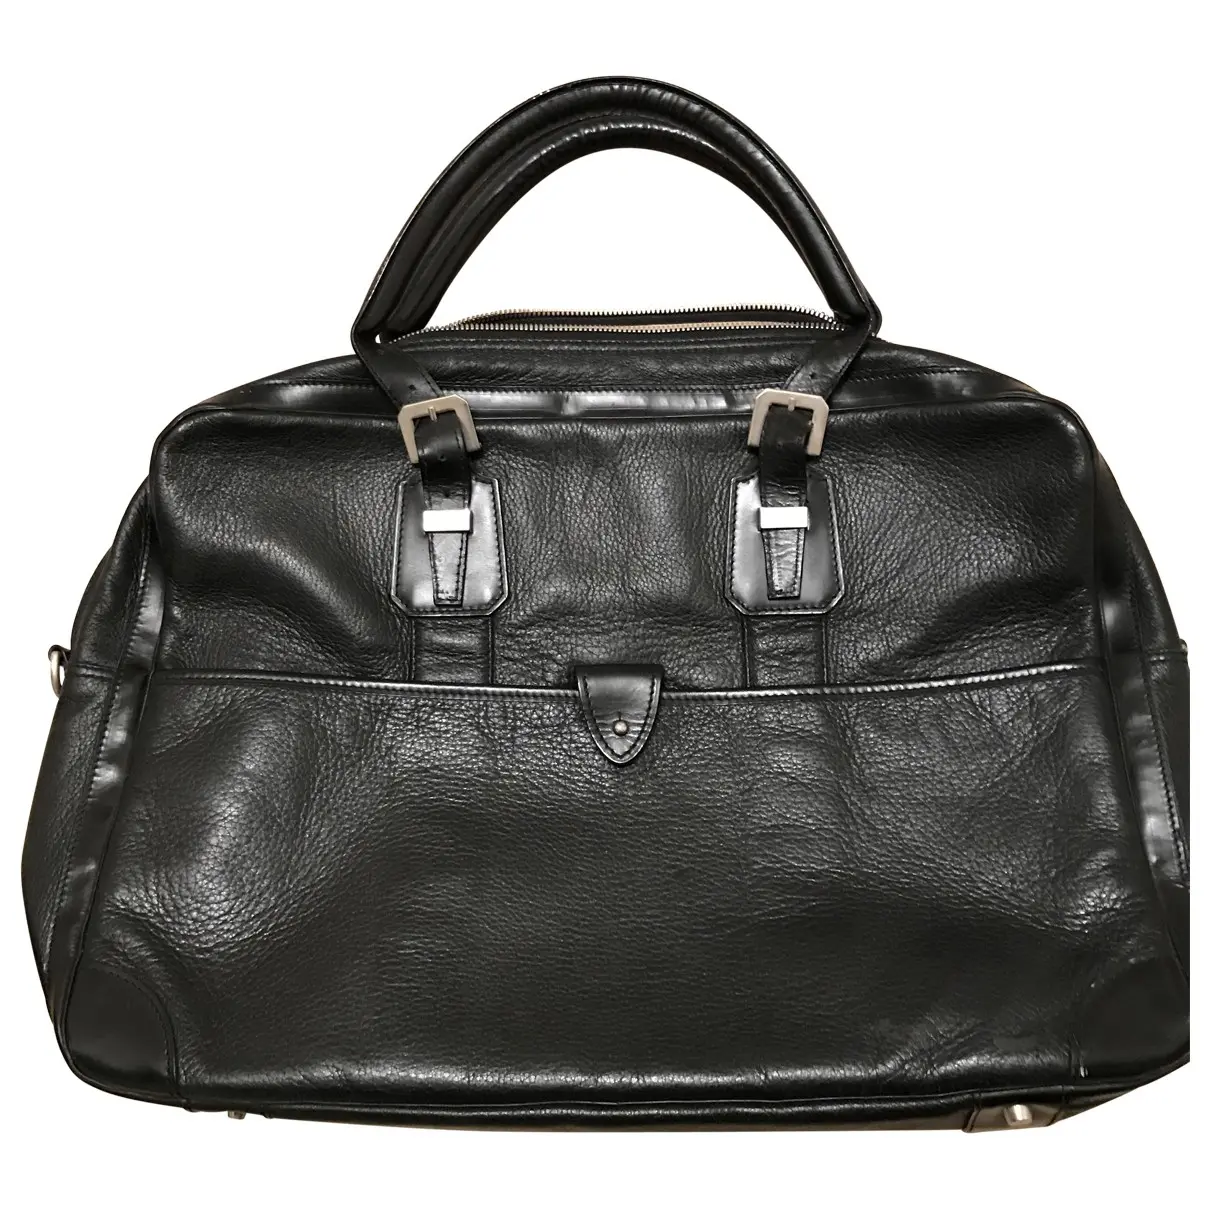 Ambassade leather bag Goyard